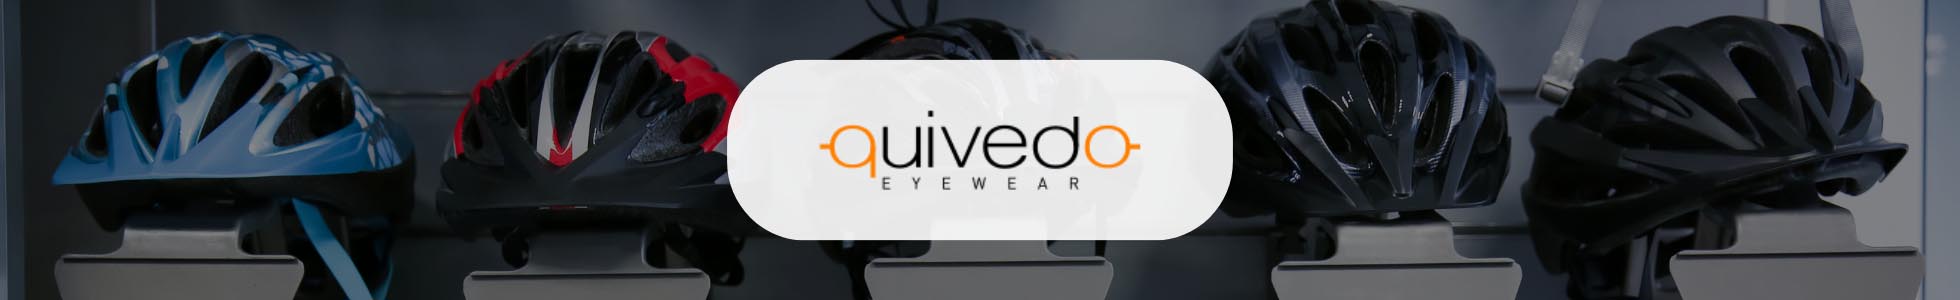 Quivedo.com - Shop online occhiali